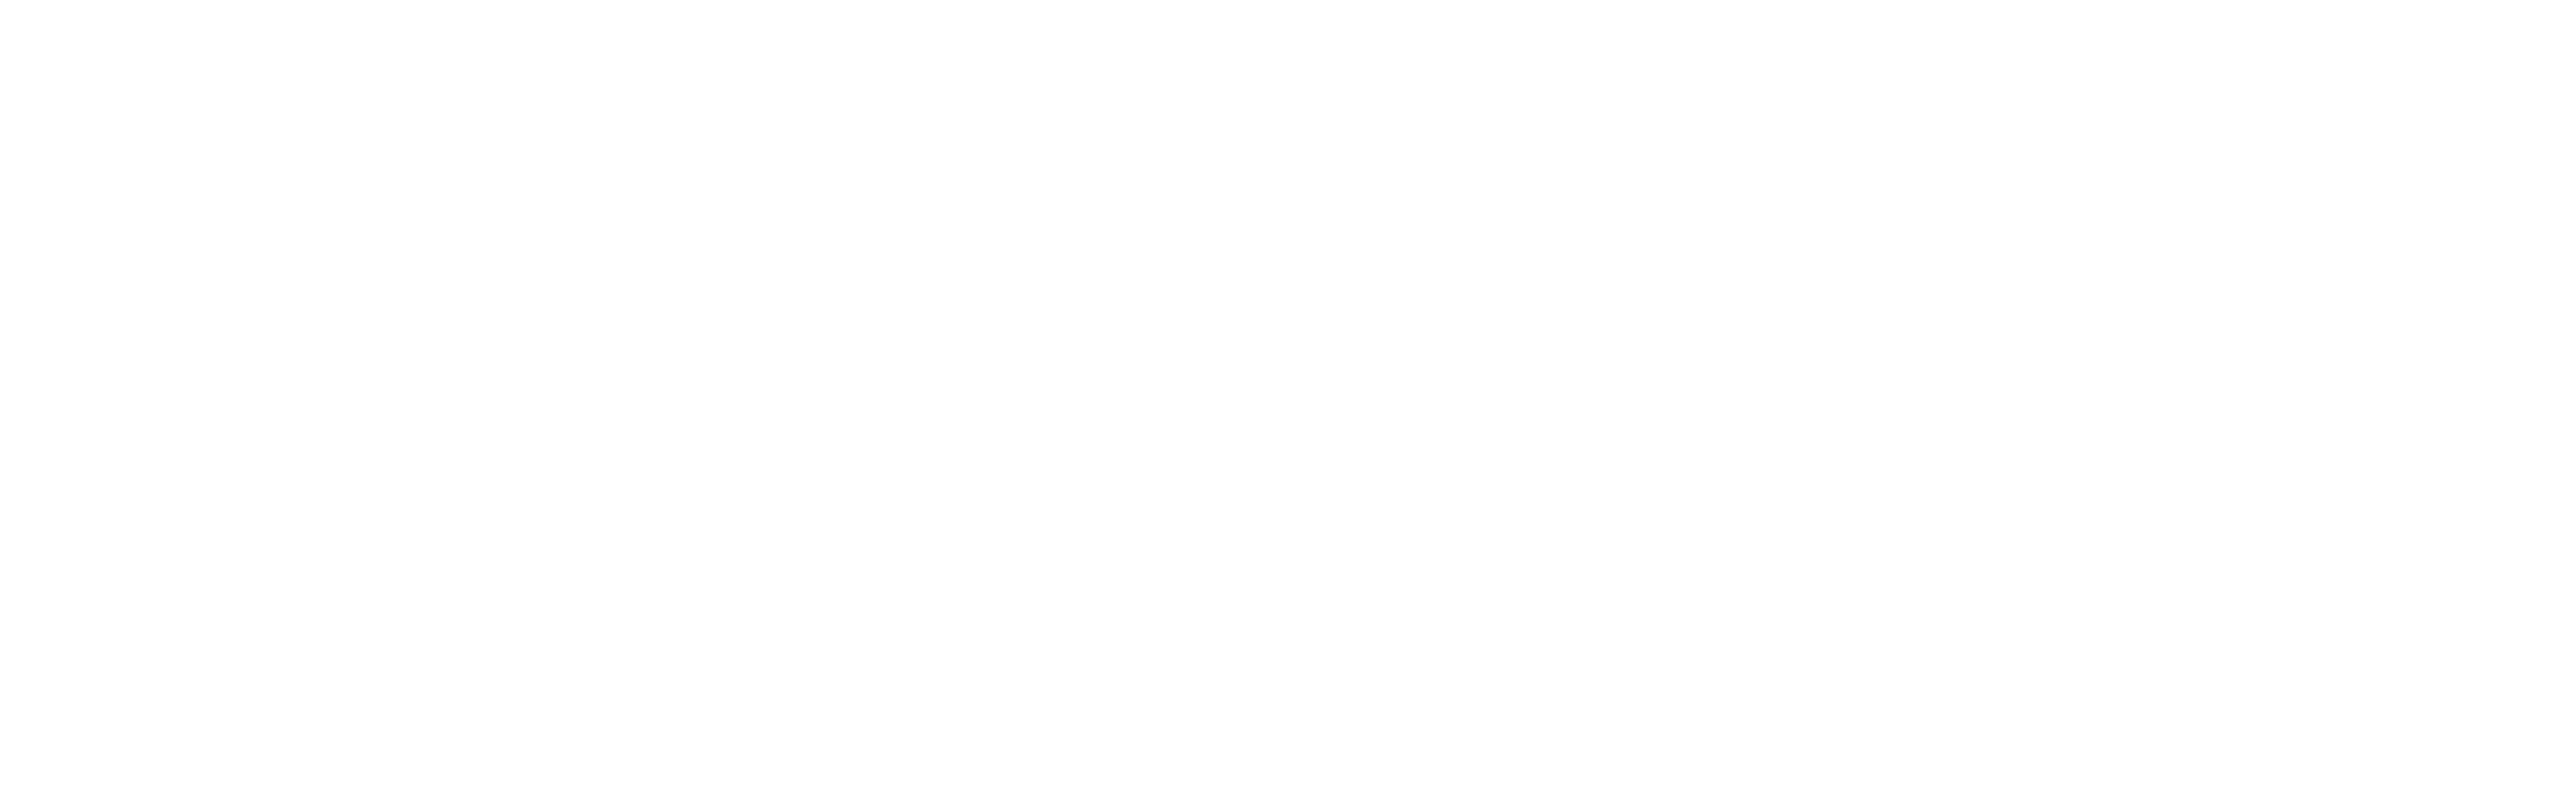 polaris audio logo